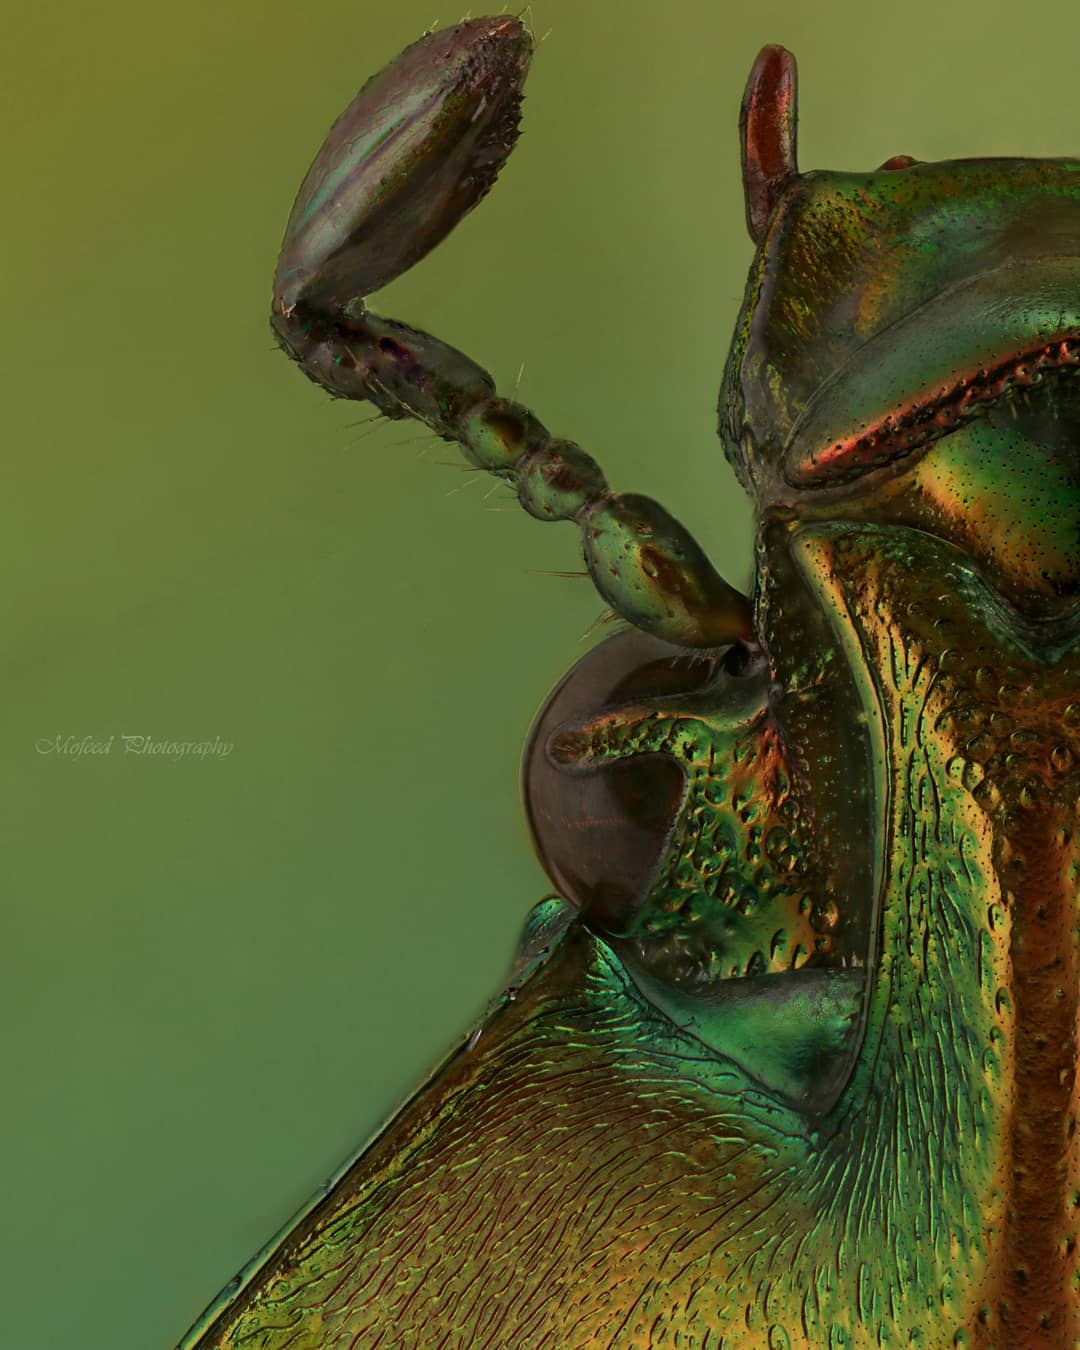 Впечатляющие макроснимки насекомых от Мофида Абу Шалвы